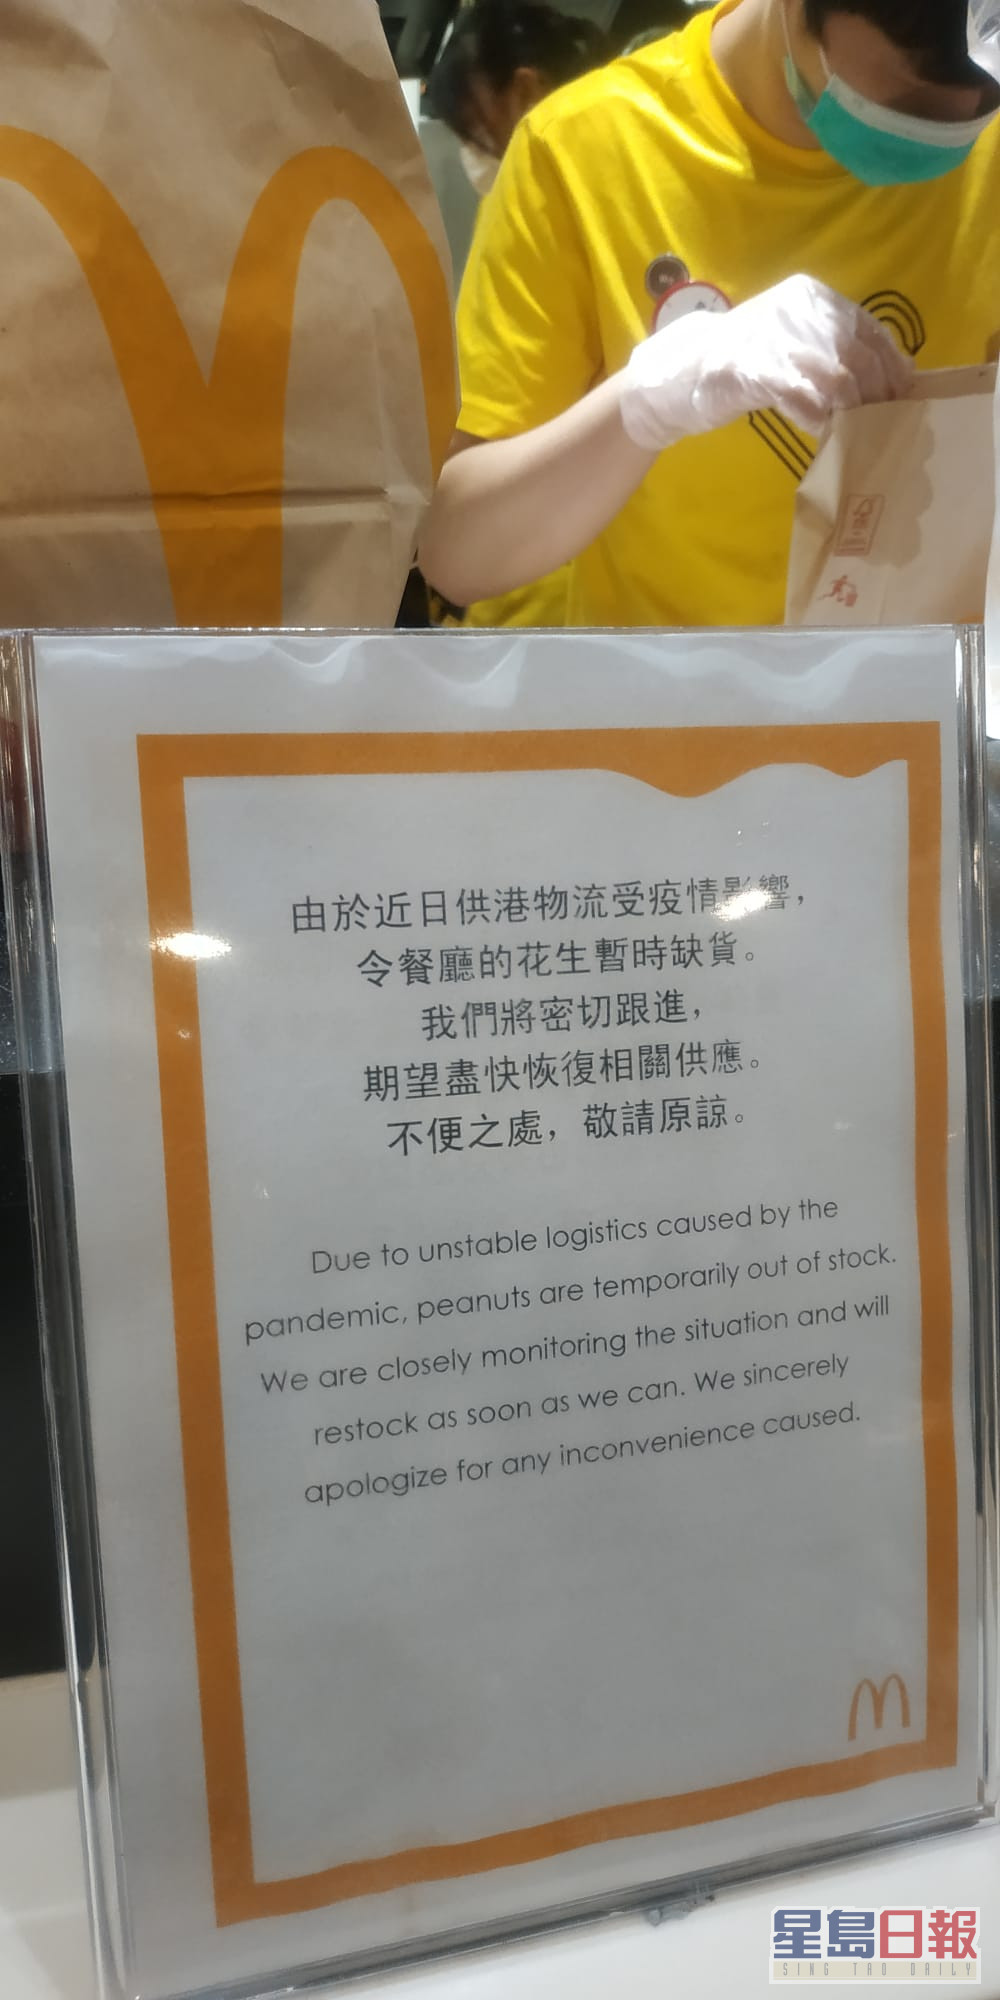 麦当劳已于餐厅柜枱等展示暂时缺货提示，通知顾客。